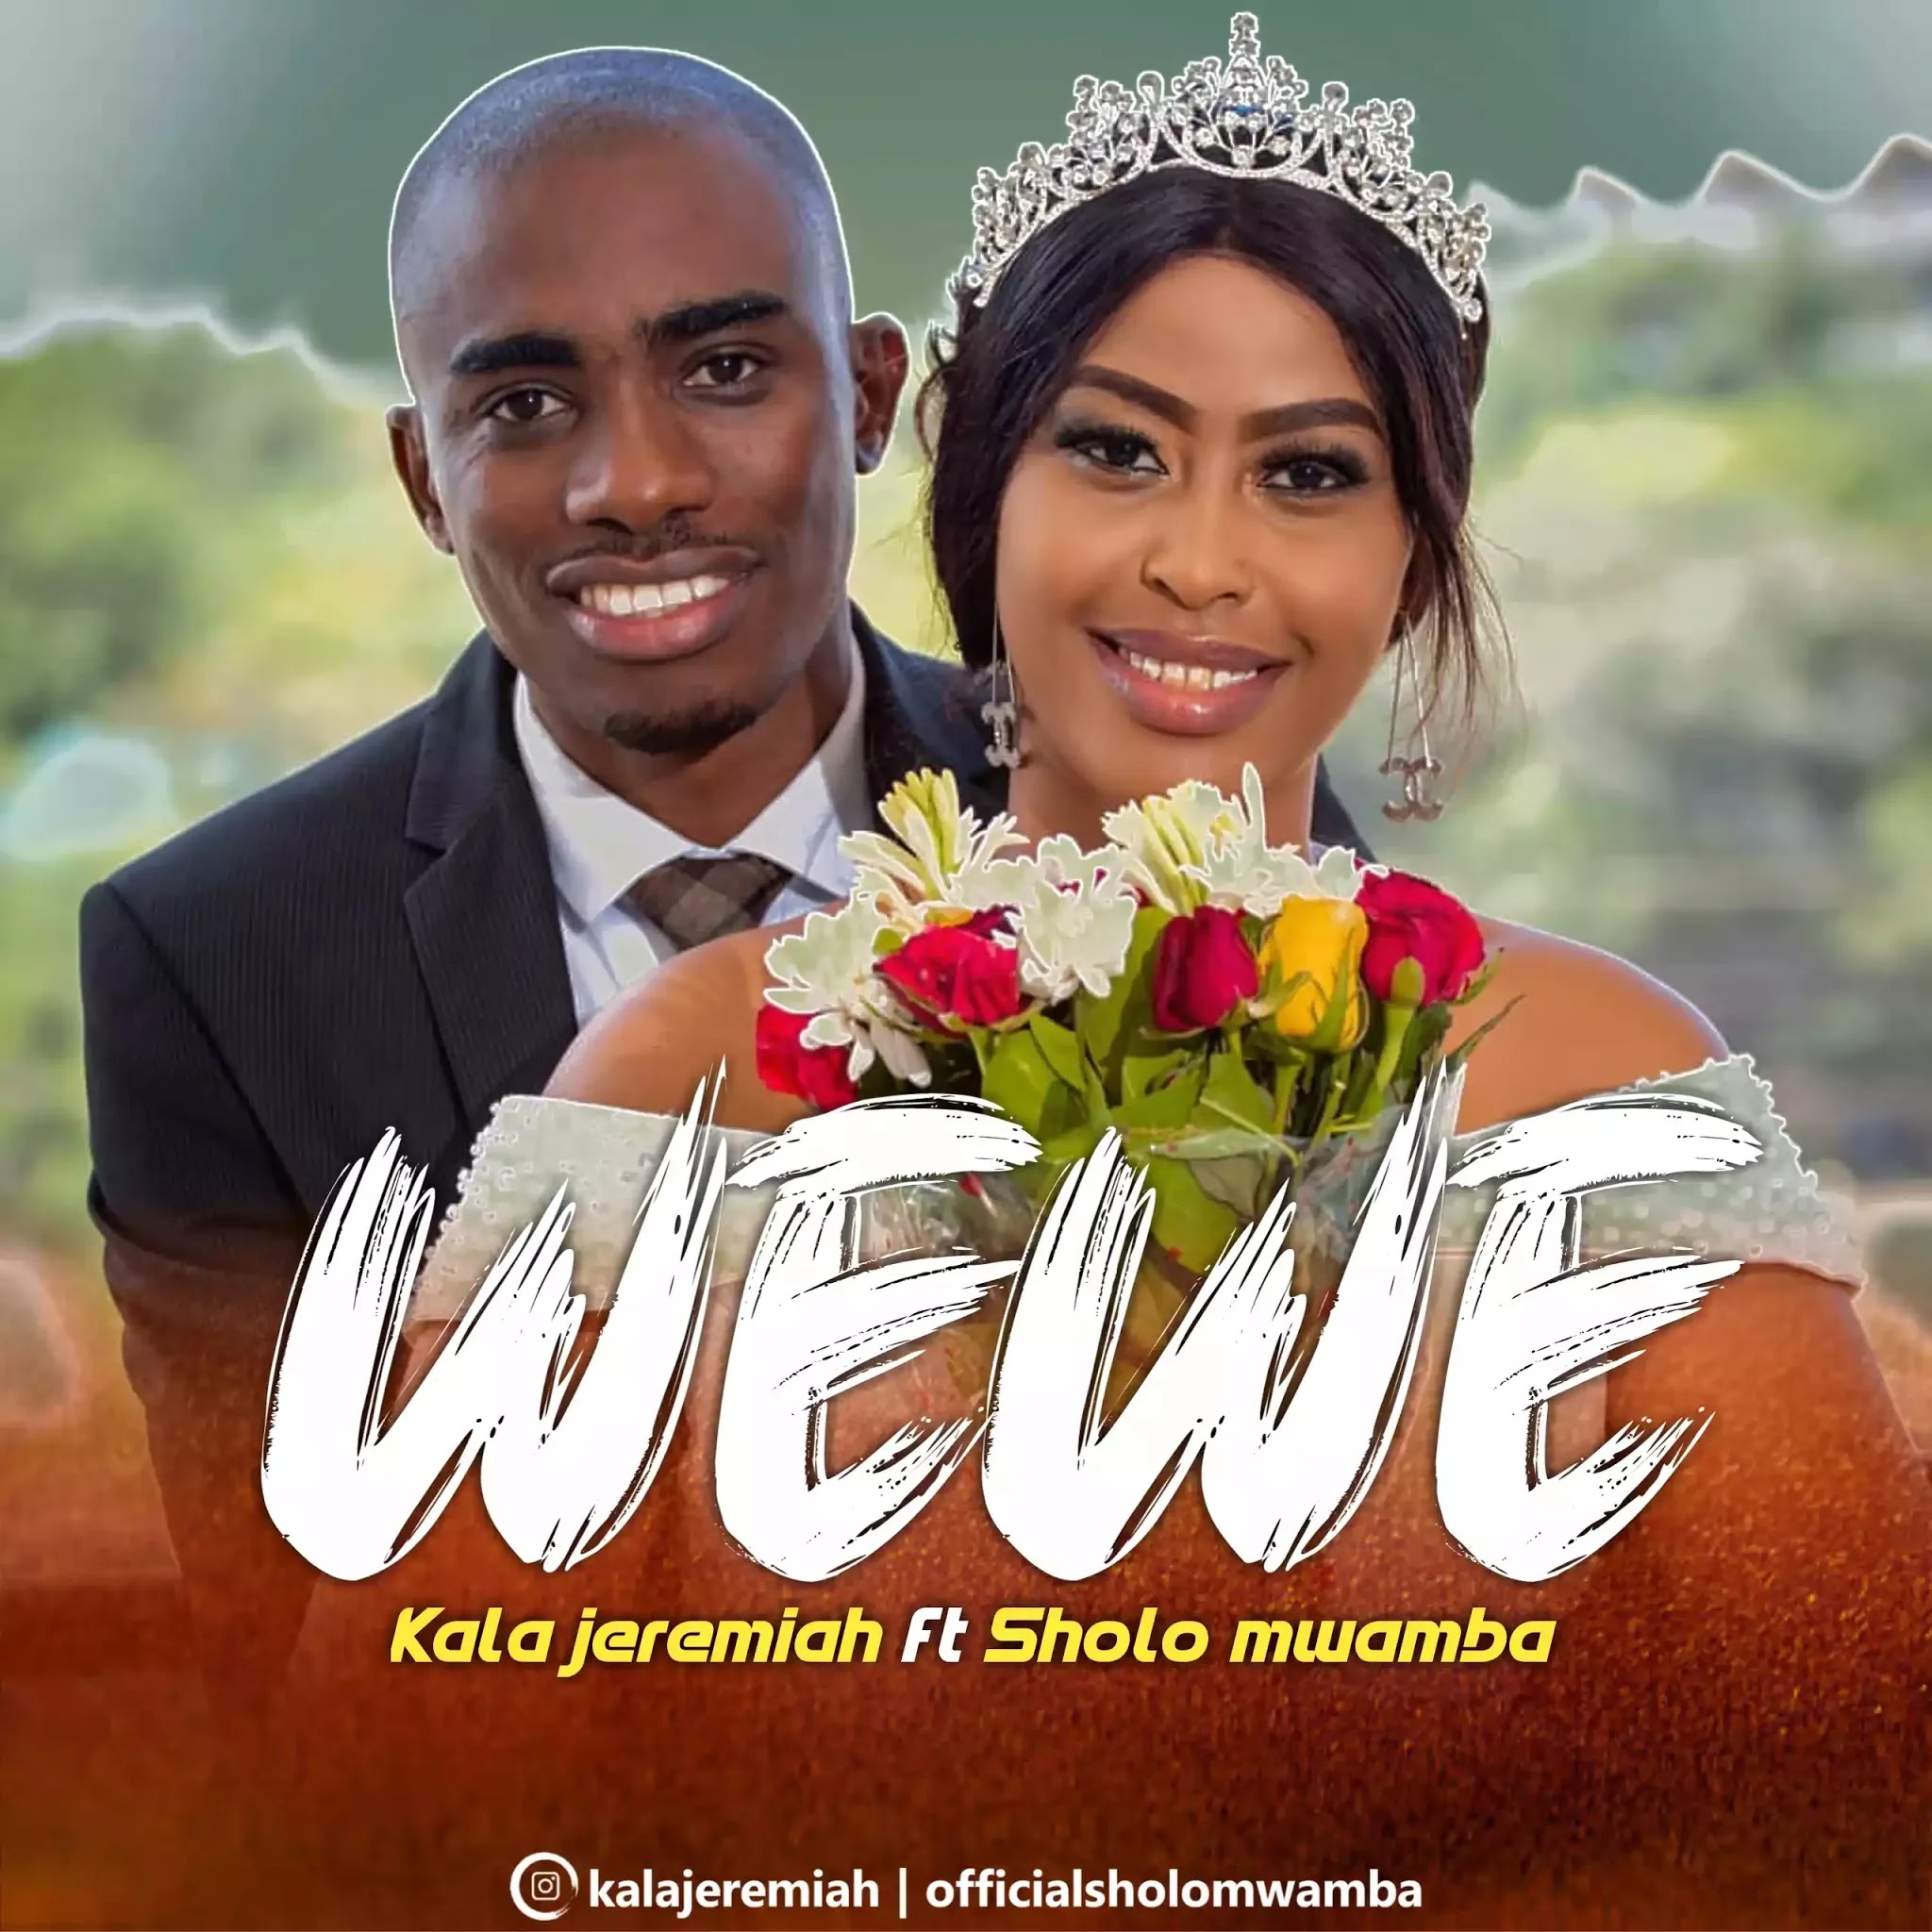 Kala jeremaiah ft Sholo mwamba – Wewe